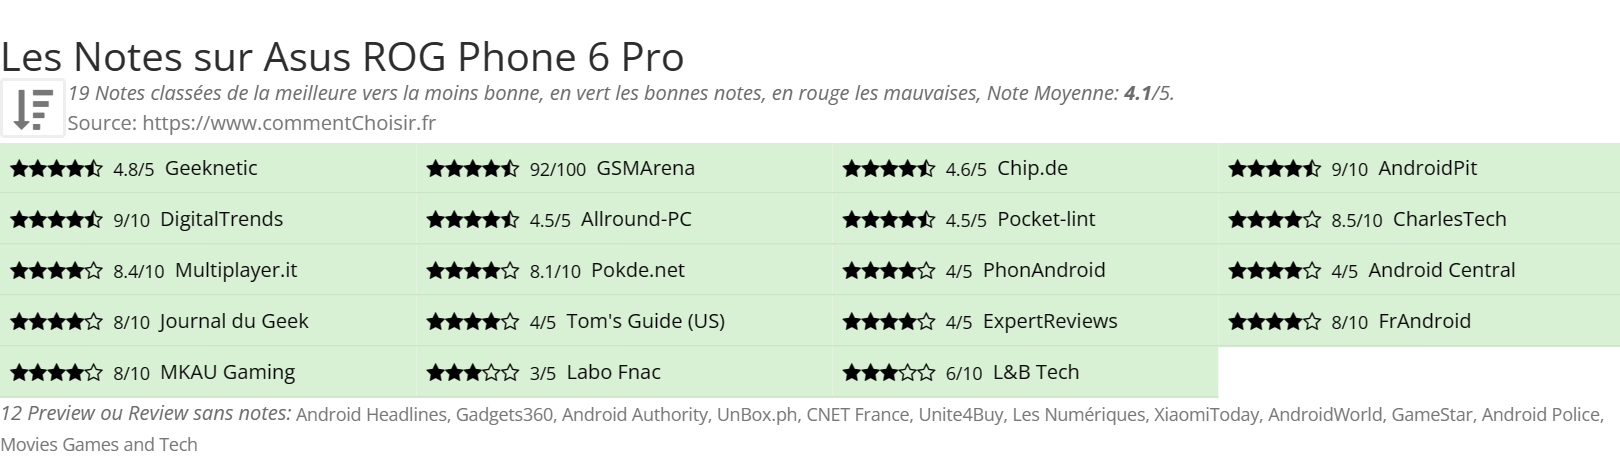 Ratings Asus ROG Phone 6 Pro